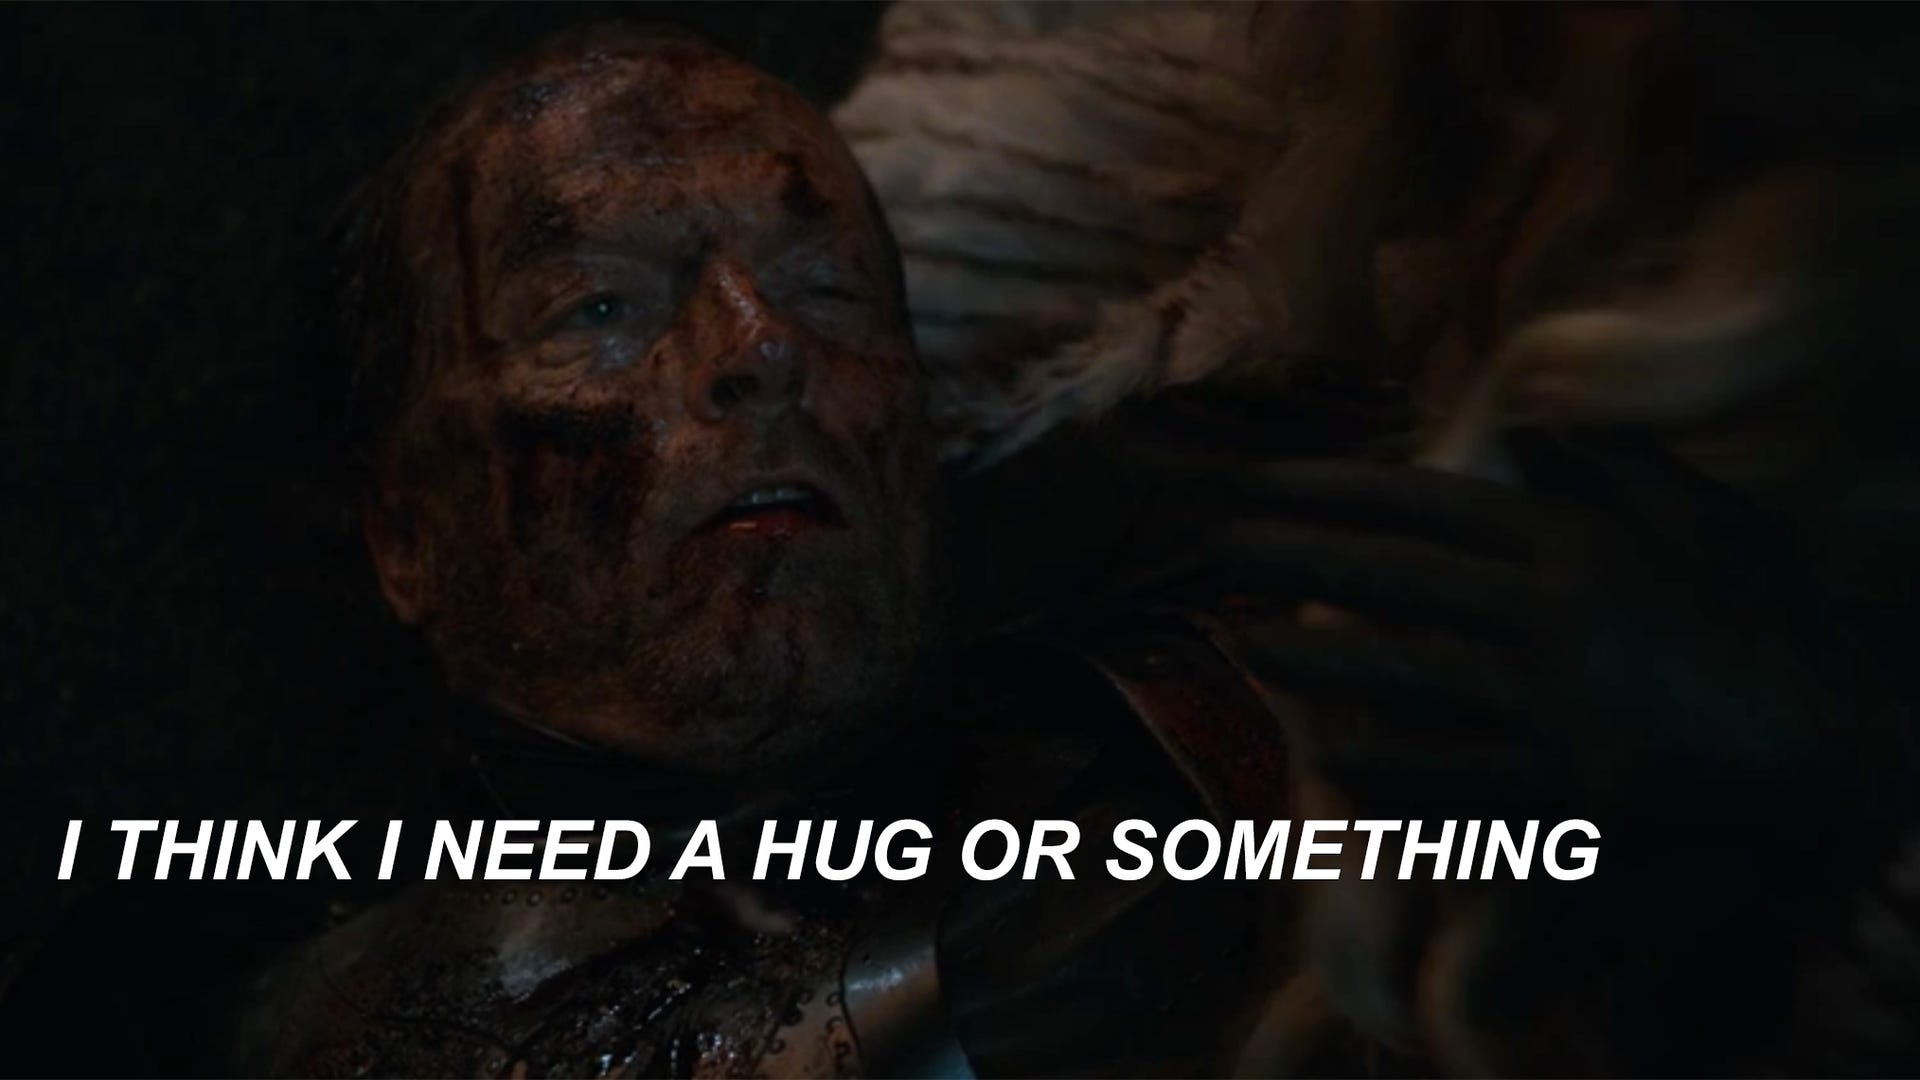 Hug Schitt's Creek Game of Thrones